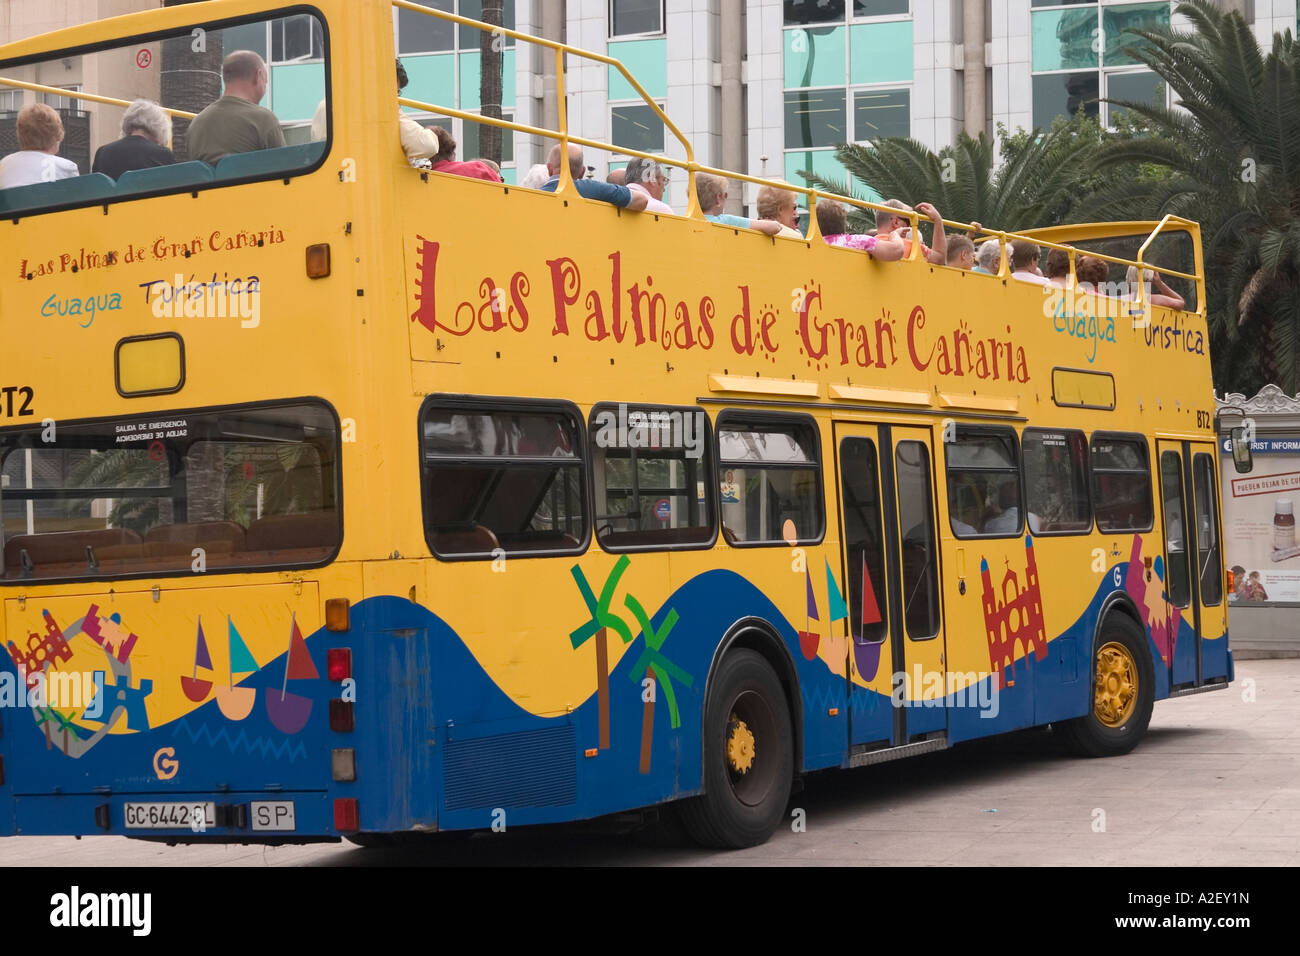 Autobús turístico, Las Palmas, Gran Canaria, Islas Canarias, islas  Canarias, España, Europa, Europa Fotografía de stock - Alamy